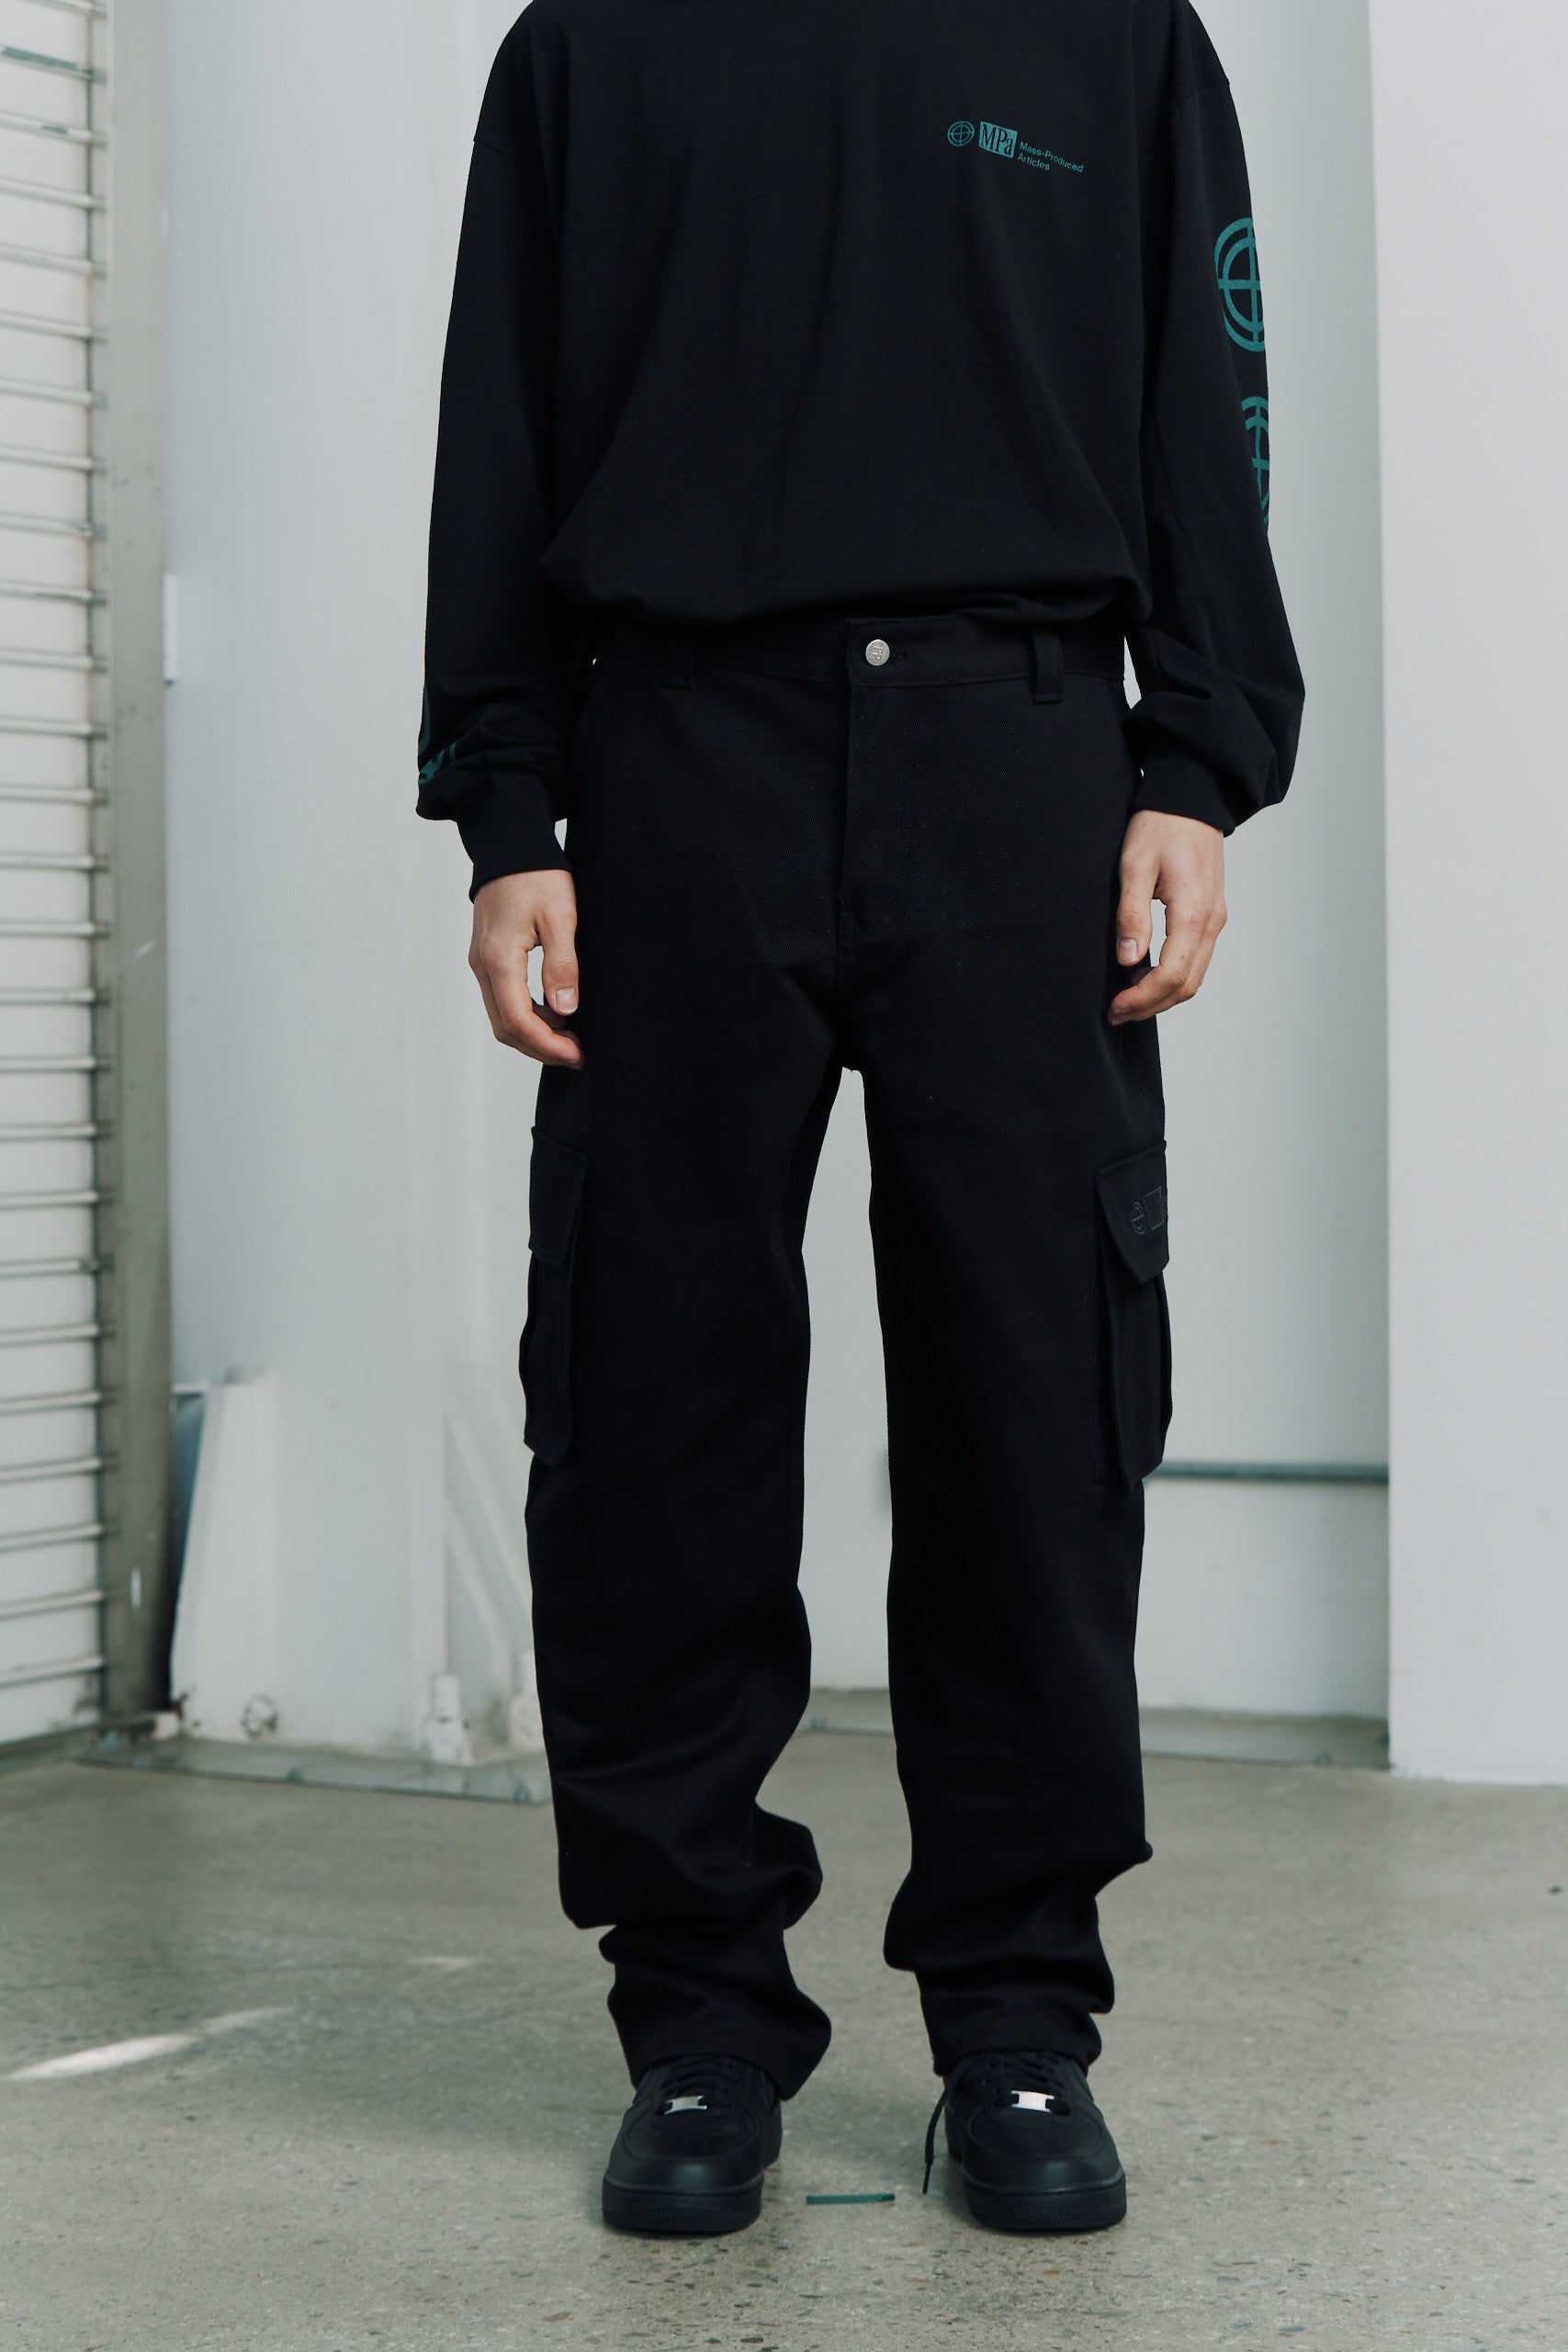 ラインカーゴパンツ / Line Cargo Pants (Black) – 60% - SIXTYPERCENT